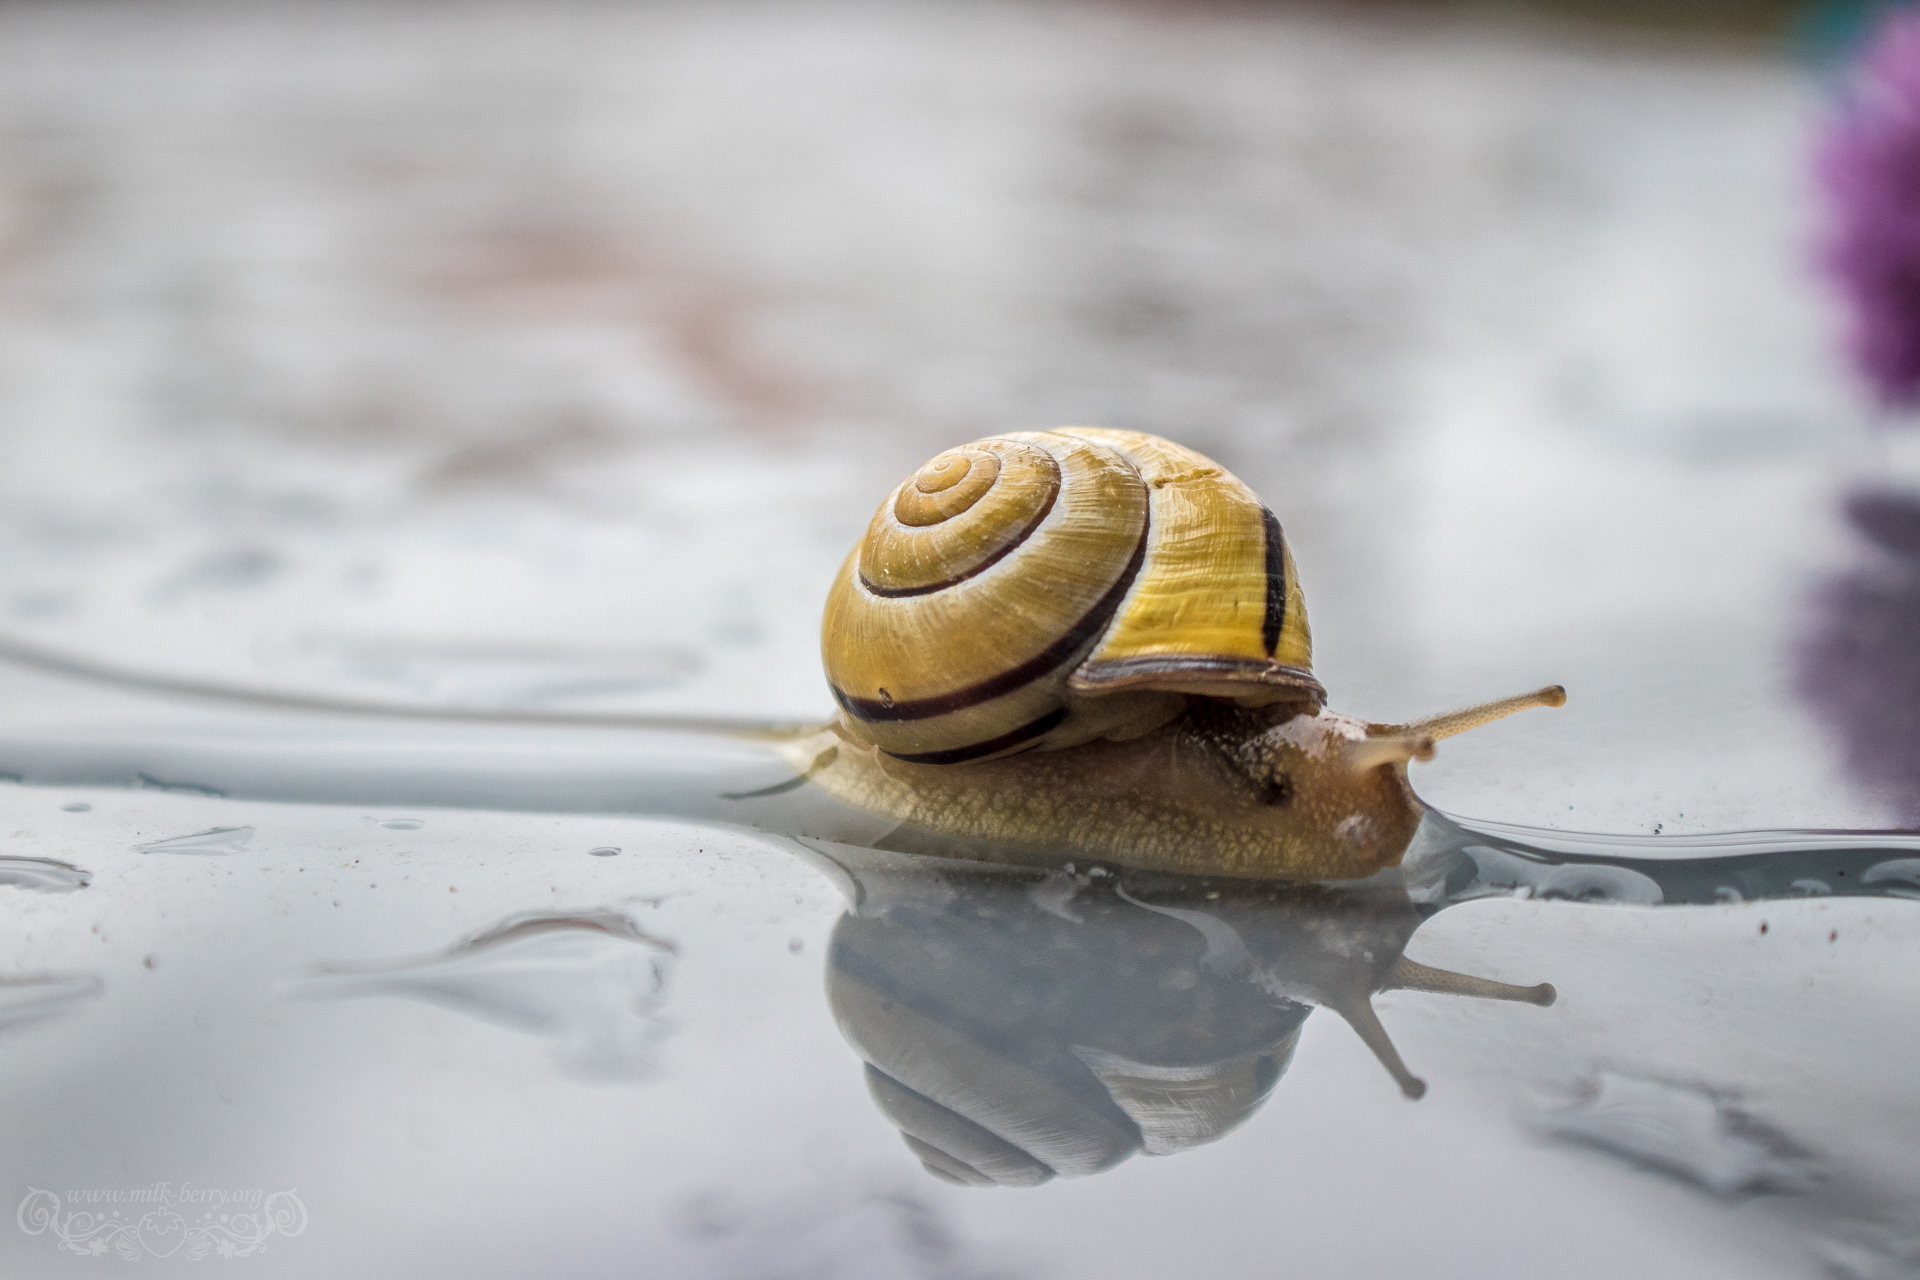 snail10